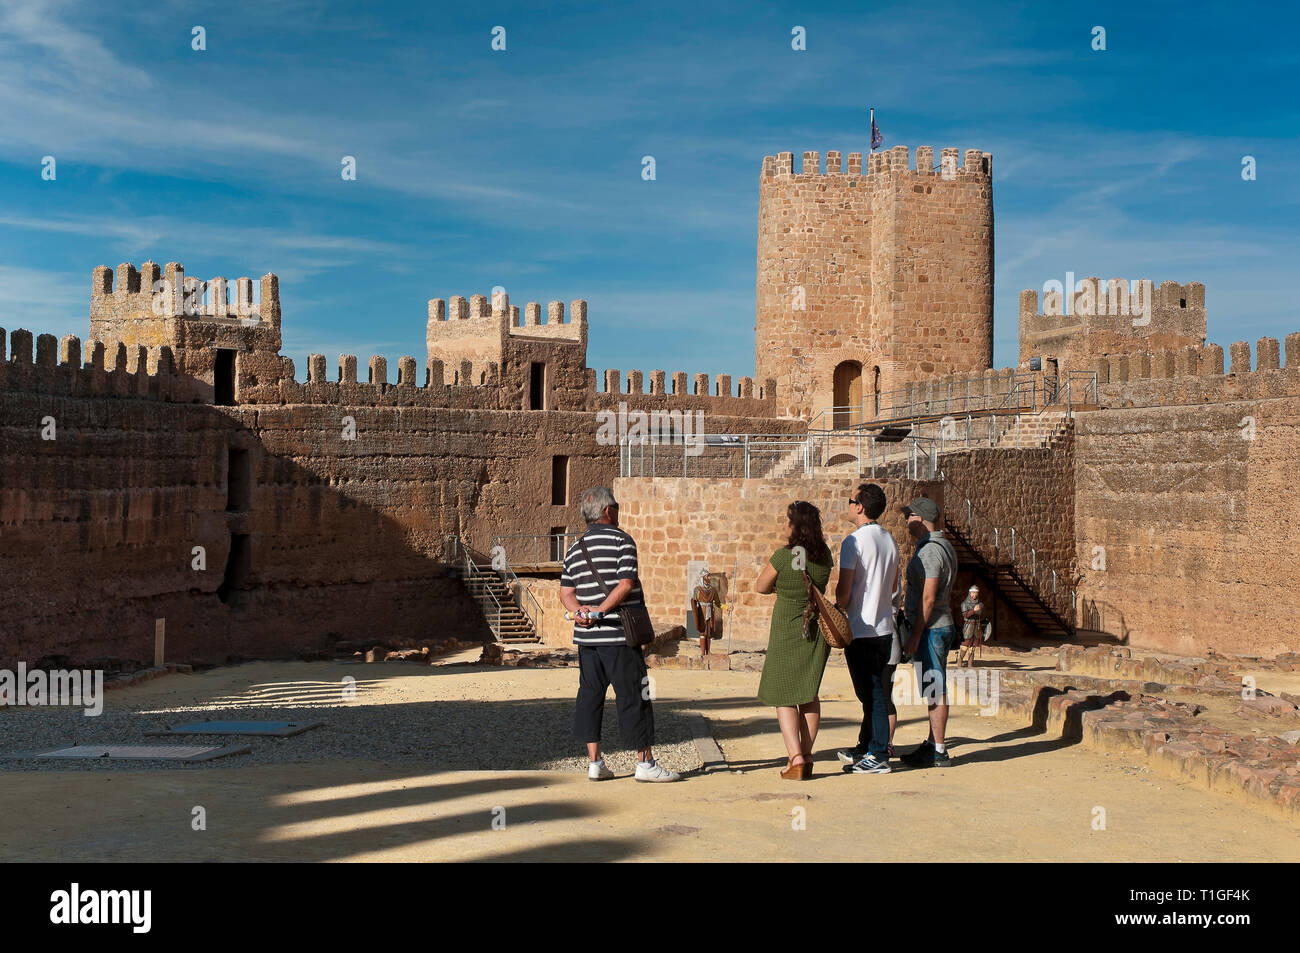 Castillo de Burgalimar (siglo X). Baños de la Encina. Provincia de Jaén. Región de Andalucía. España. Europa Foto de stock